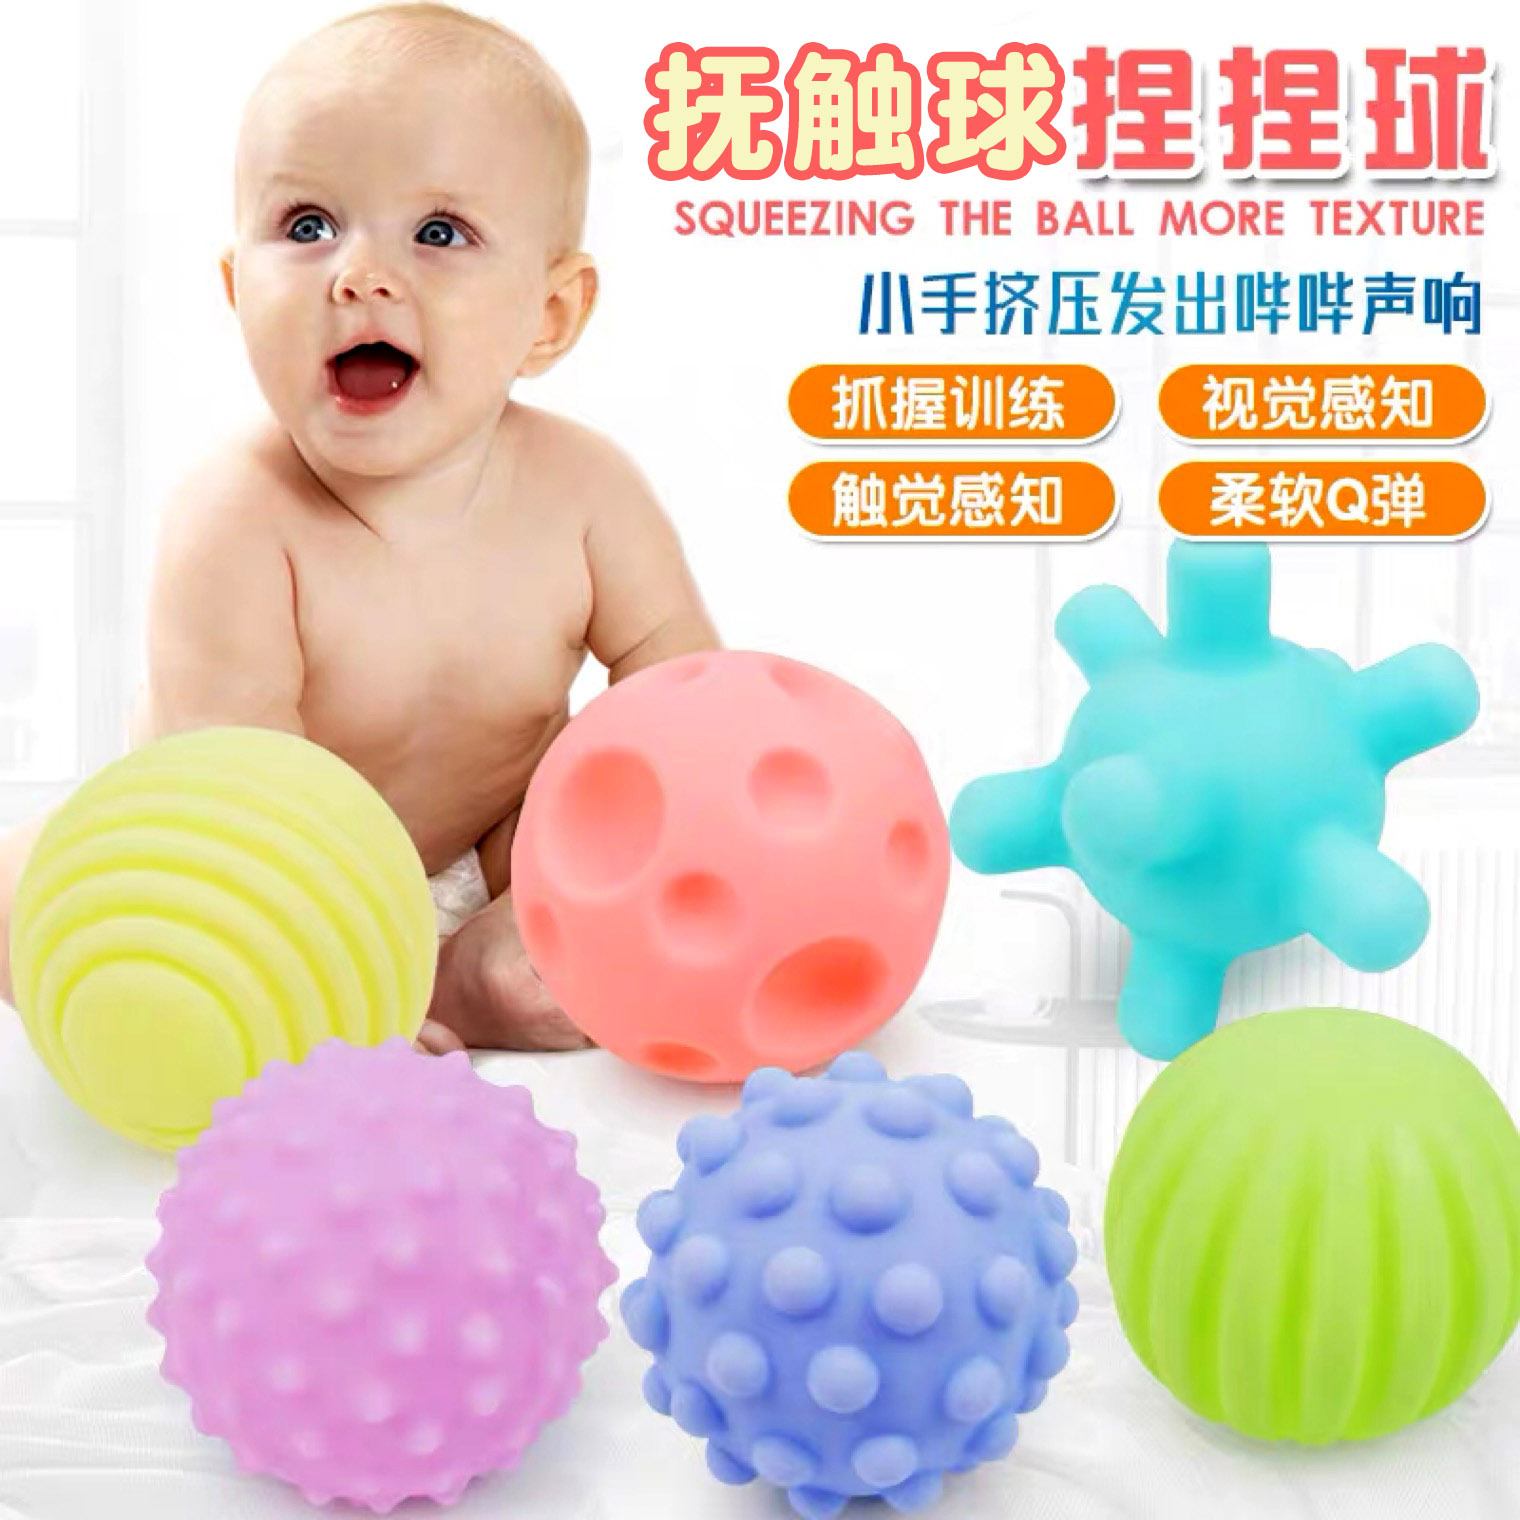 手抓球婴儿球类玩具6-12个月宝宝软胶触觉感知球按摩球6个装-阿里巴巴